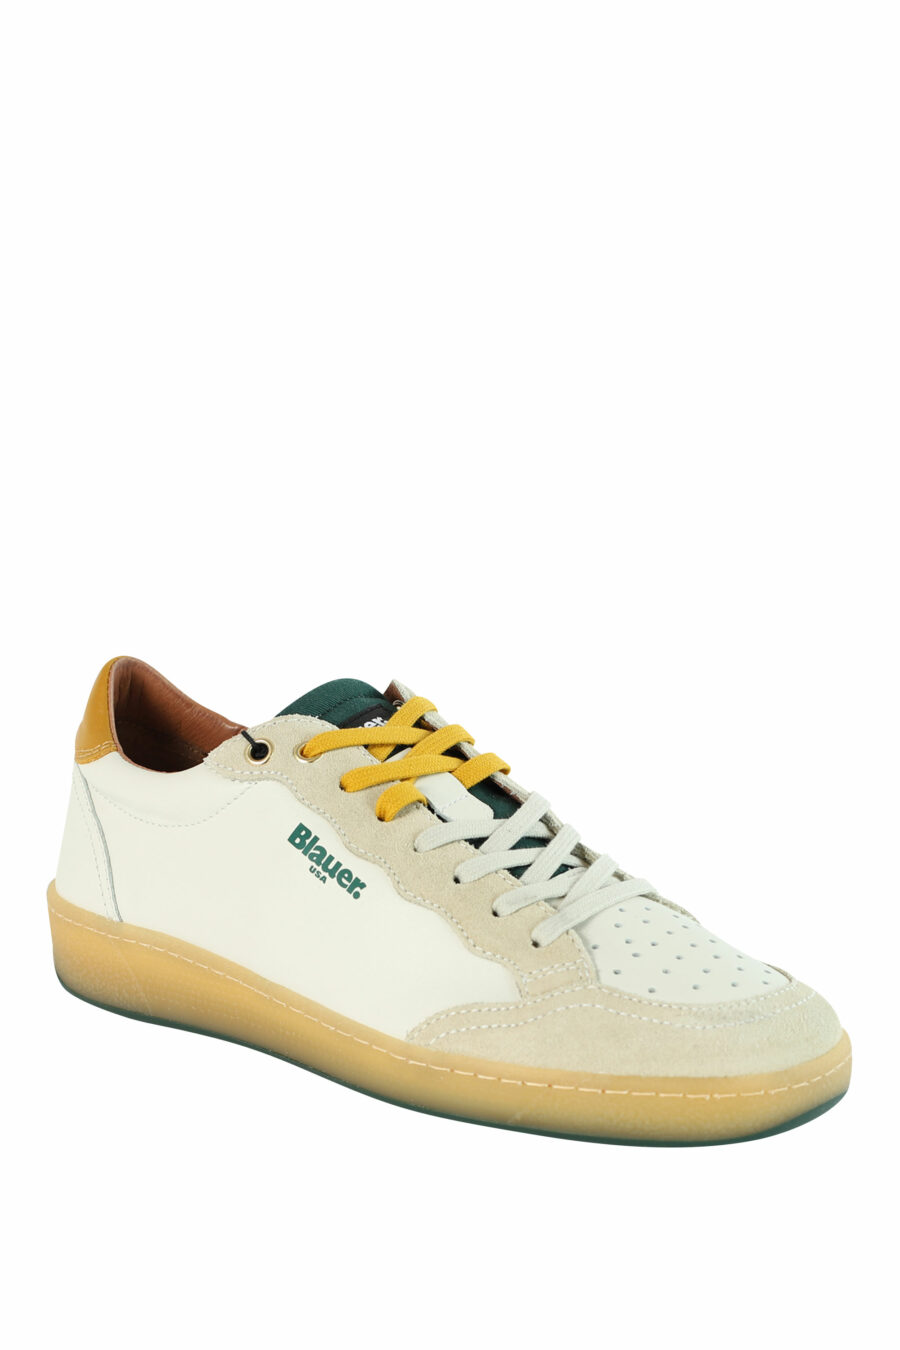 Zapatillas "MURRAY" blancas con detalles verdes y amarillos - 8058156497566 2